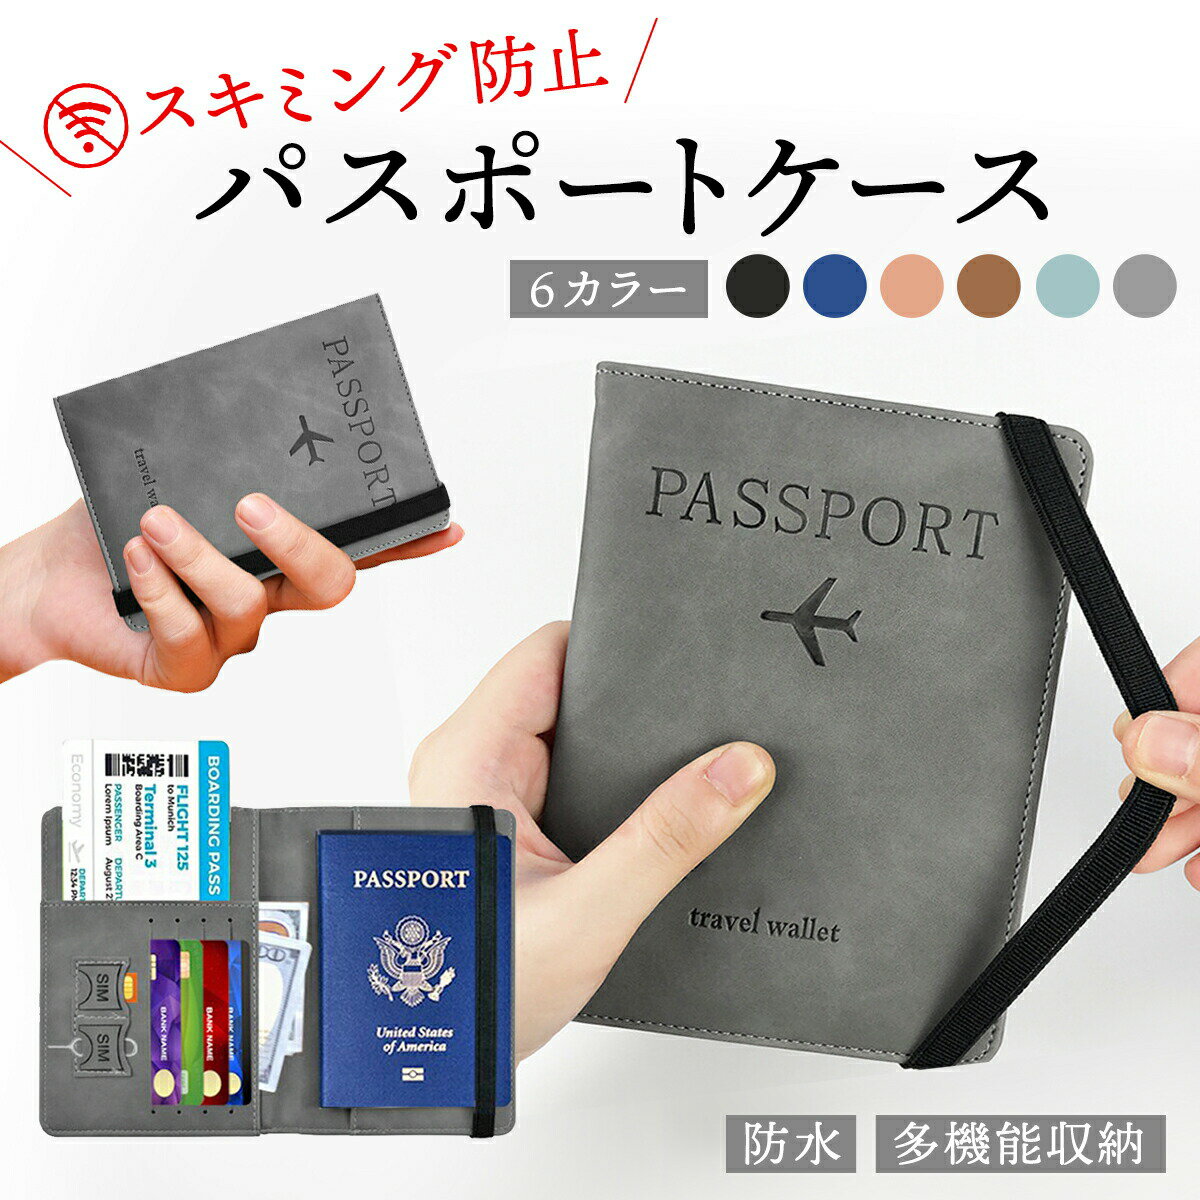 【P5倍】 パスポートケース スキミング 防止 6色 ゴムバンド 付属 パスポート ケース トラベル グッズ カバー 入れ …